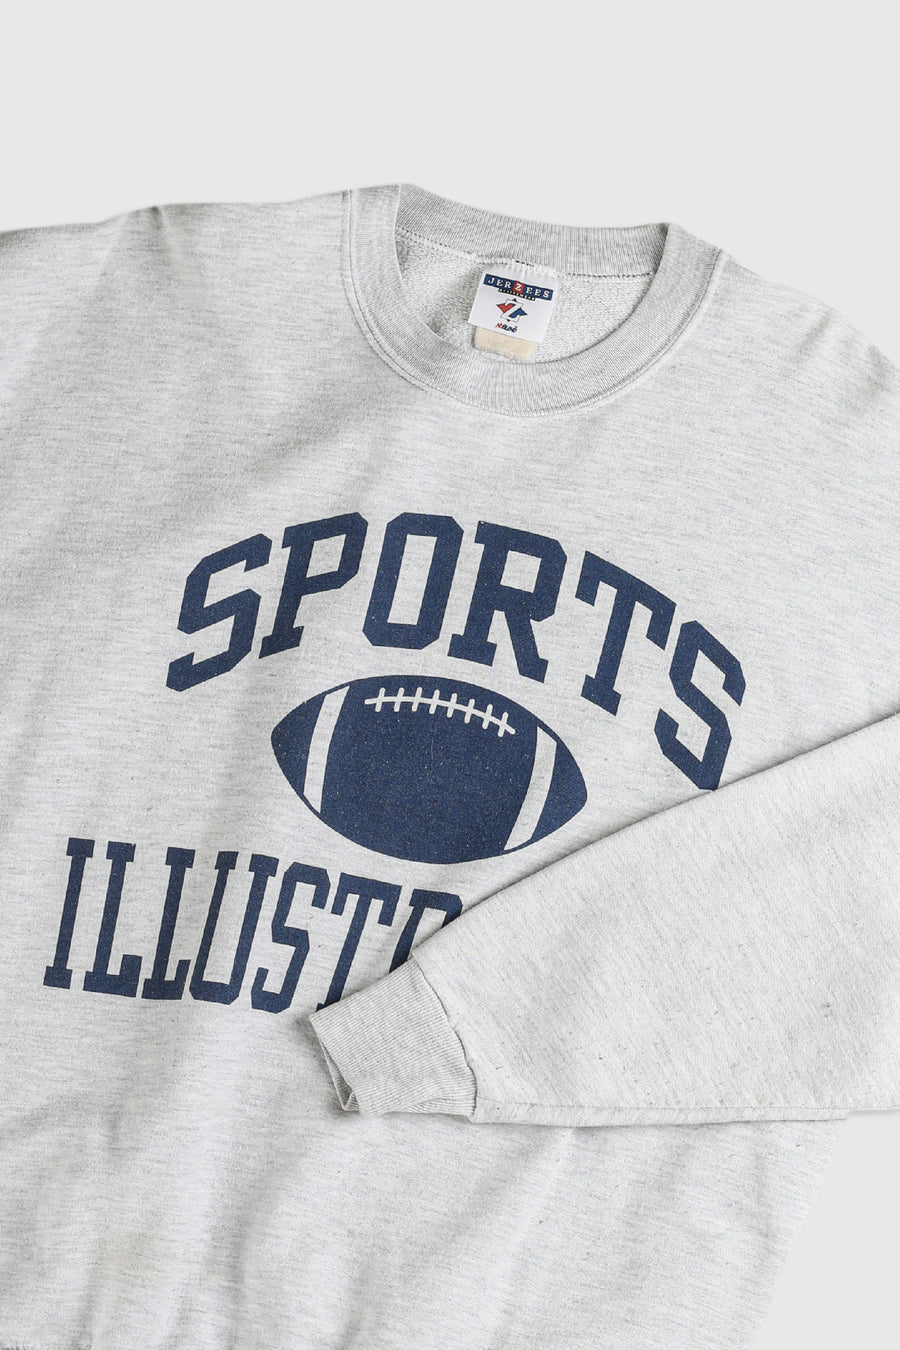 Vintage Sports Illustrated Sweatshirt